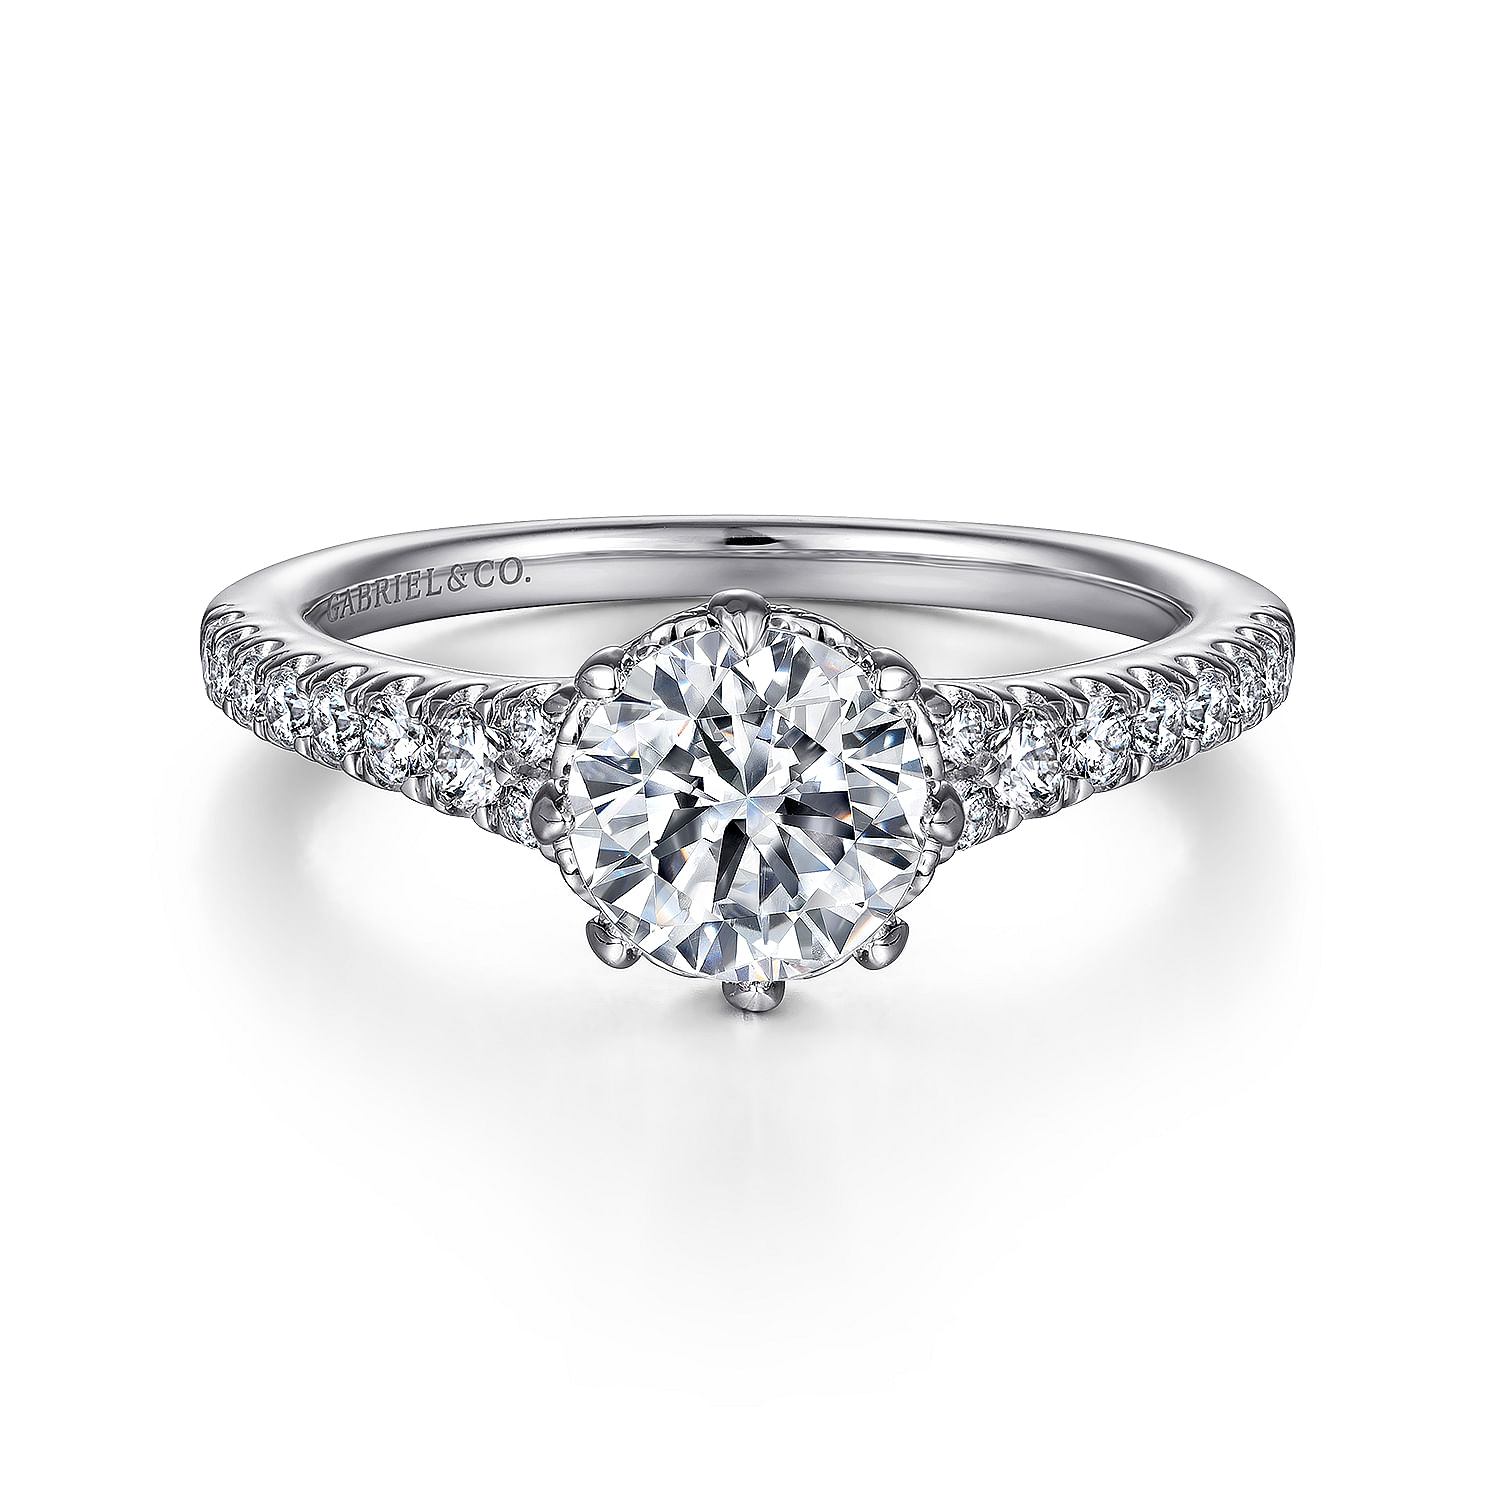 Sherilynn - 14K White Gold Round Diamond Engagement Ring